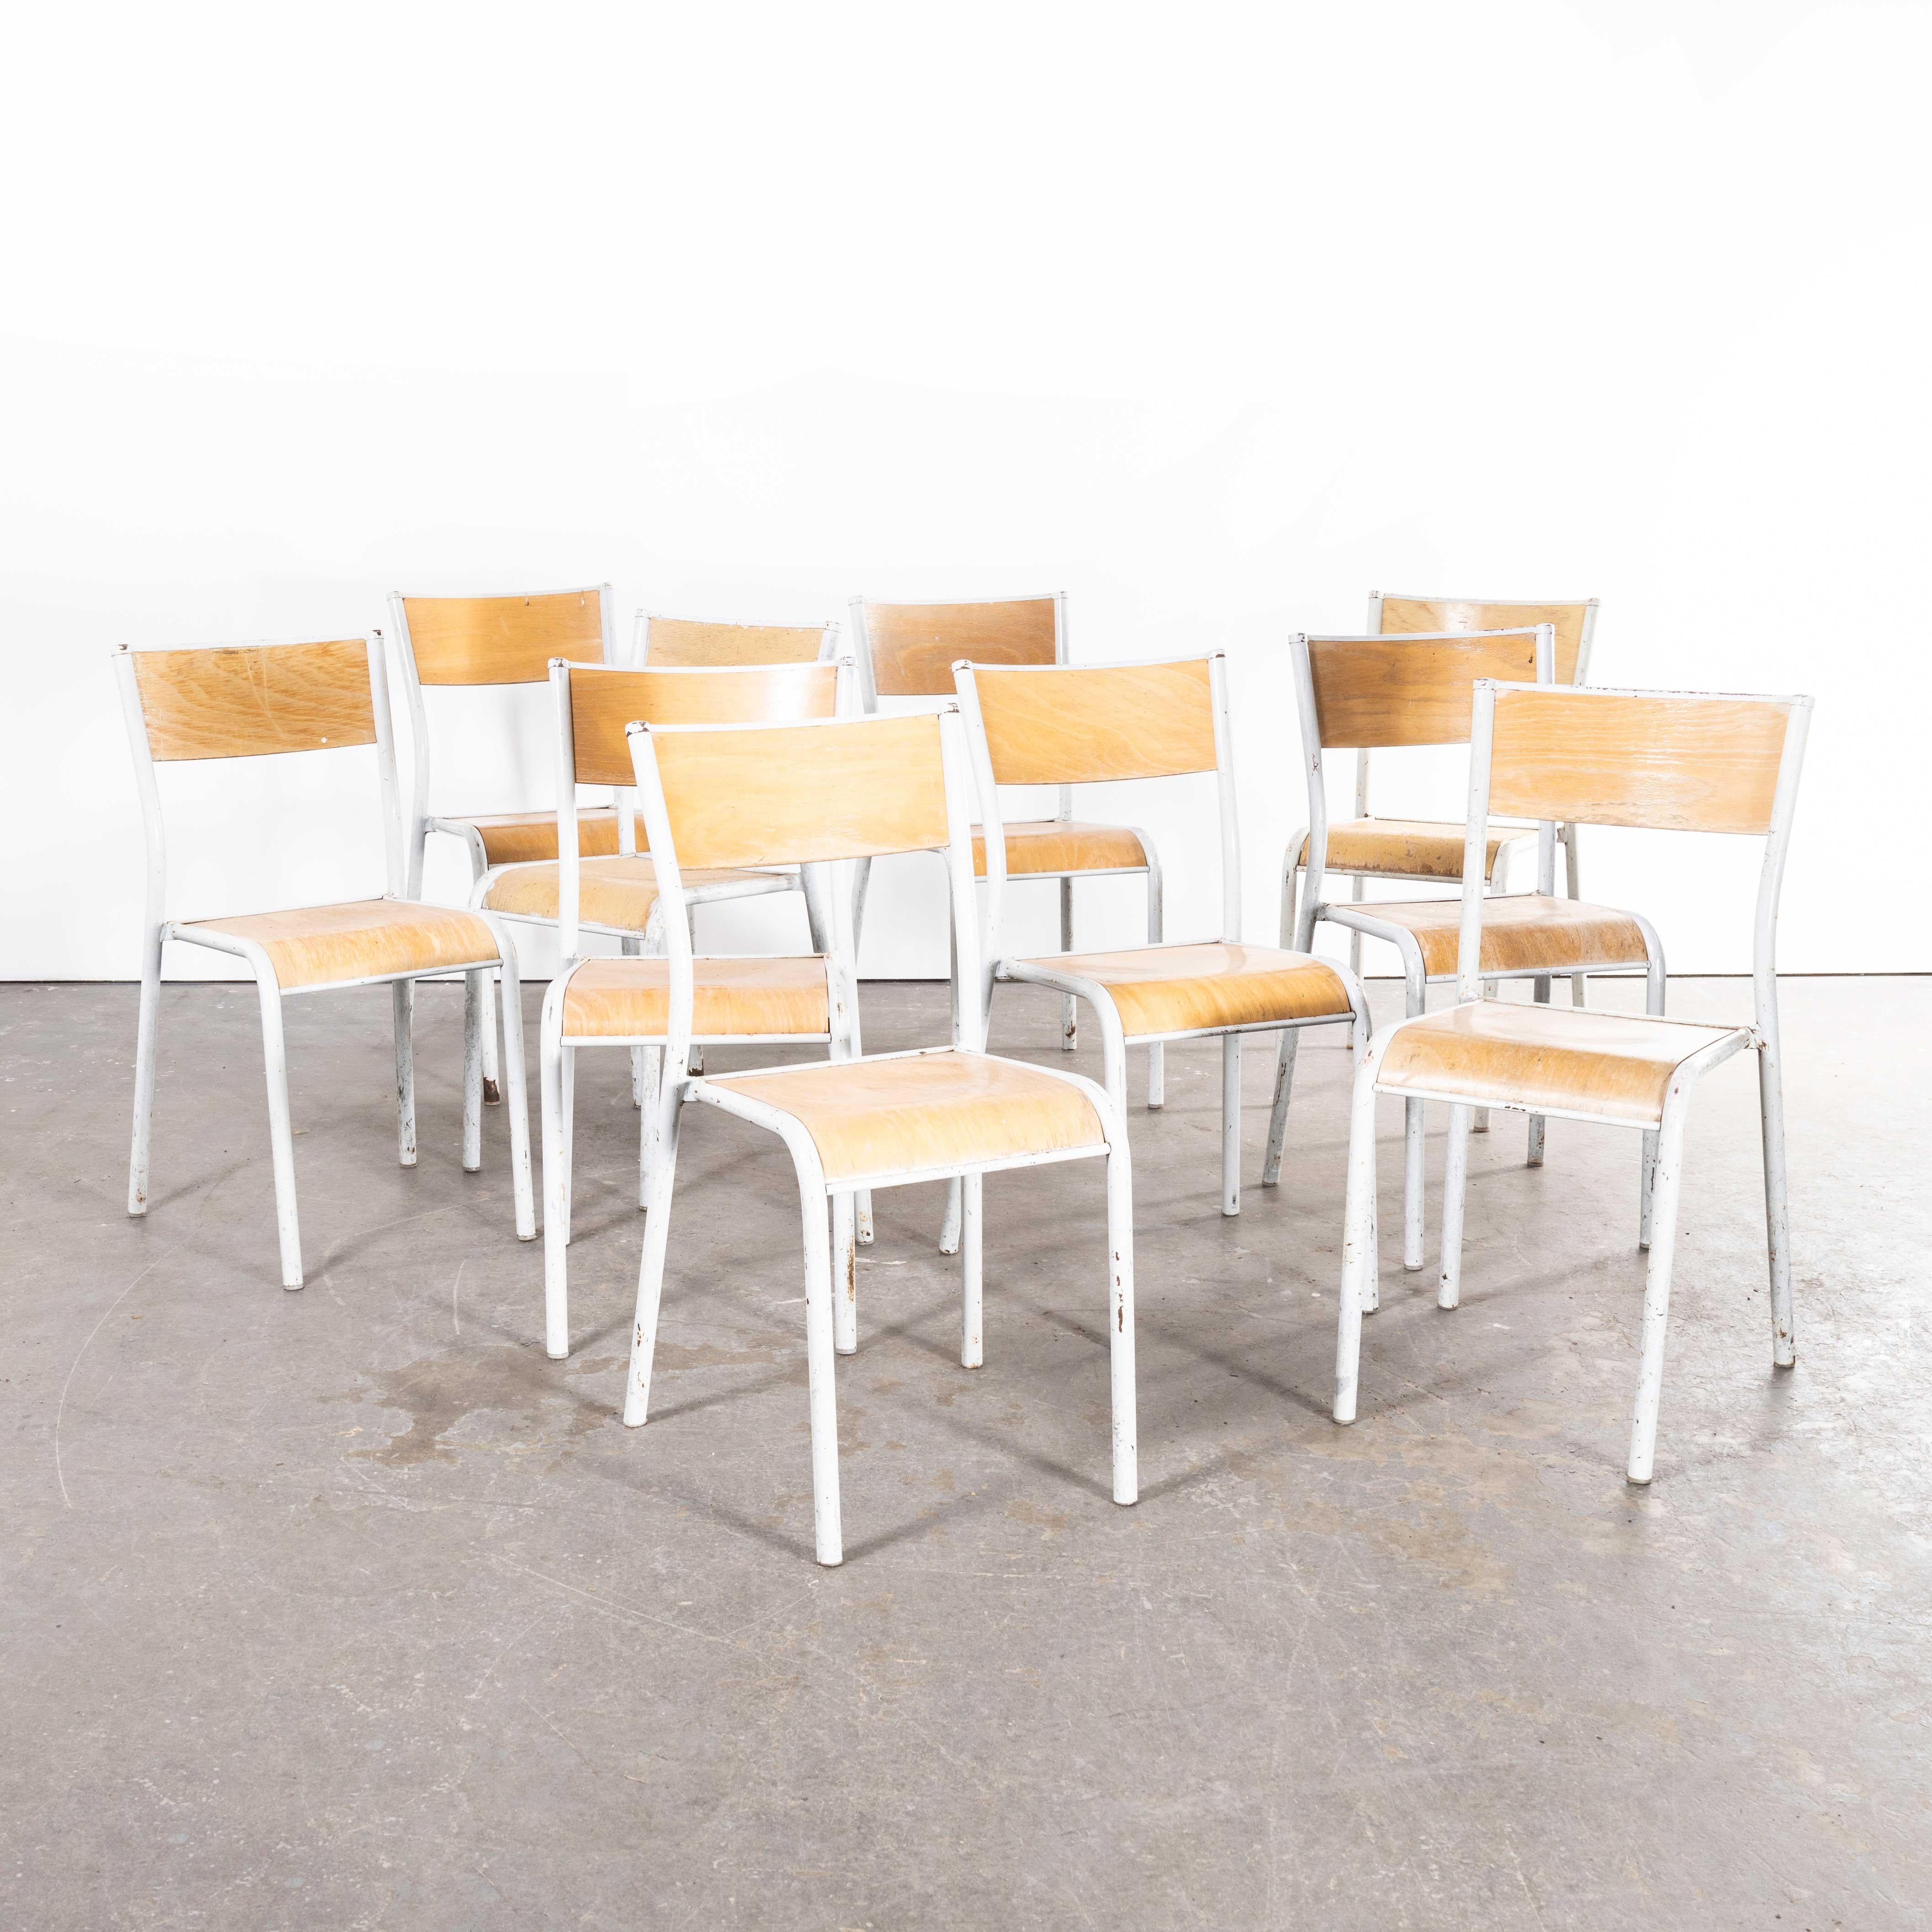 1950's French Mullca Stacking School Dining Chairs, Modell 510 - Weiß - Zehnersatz
1950's French Mullca Stacking School Dining Chairs, Modell 510 - Weiß - Satz von zehn. Einer unserer Lieblingsstühle. 1947 gründeten Robert Muller und Gaston